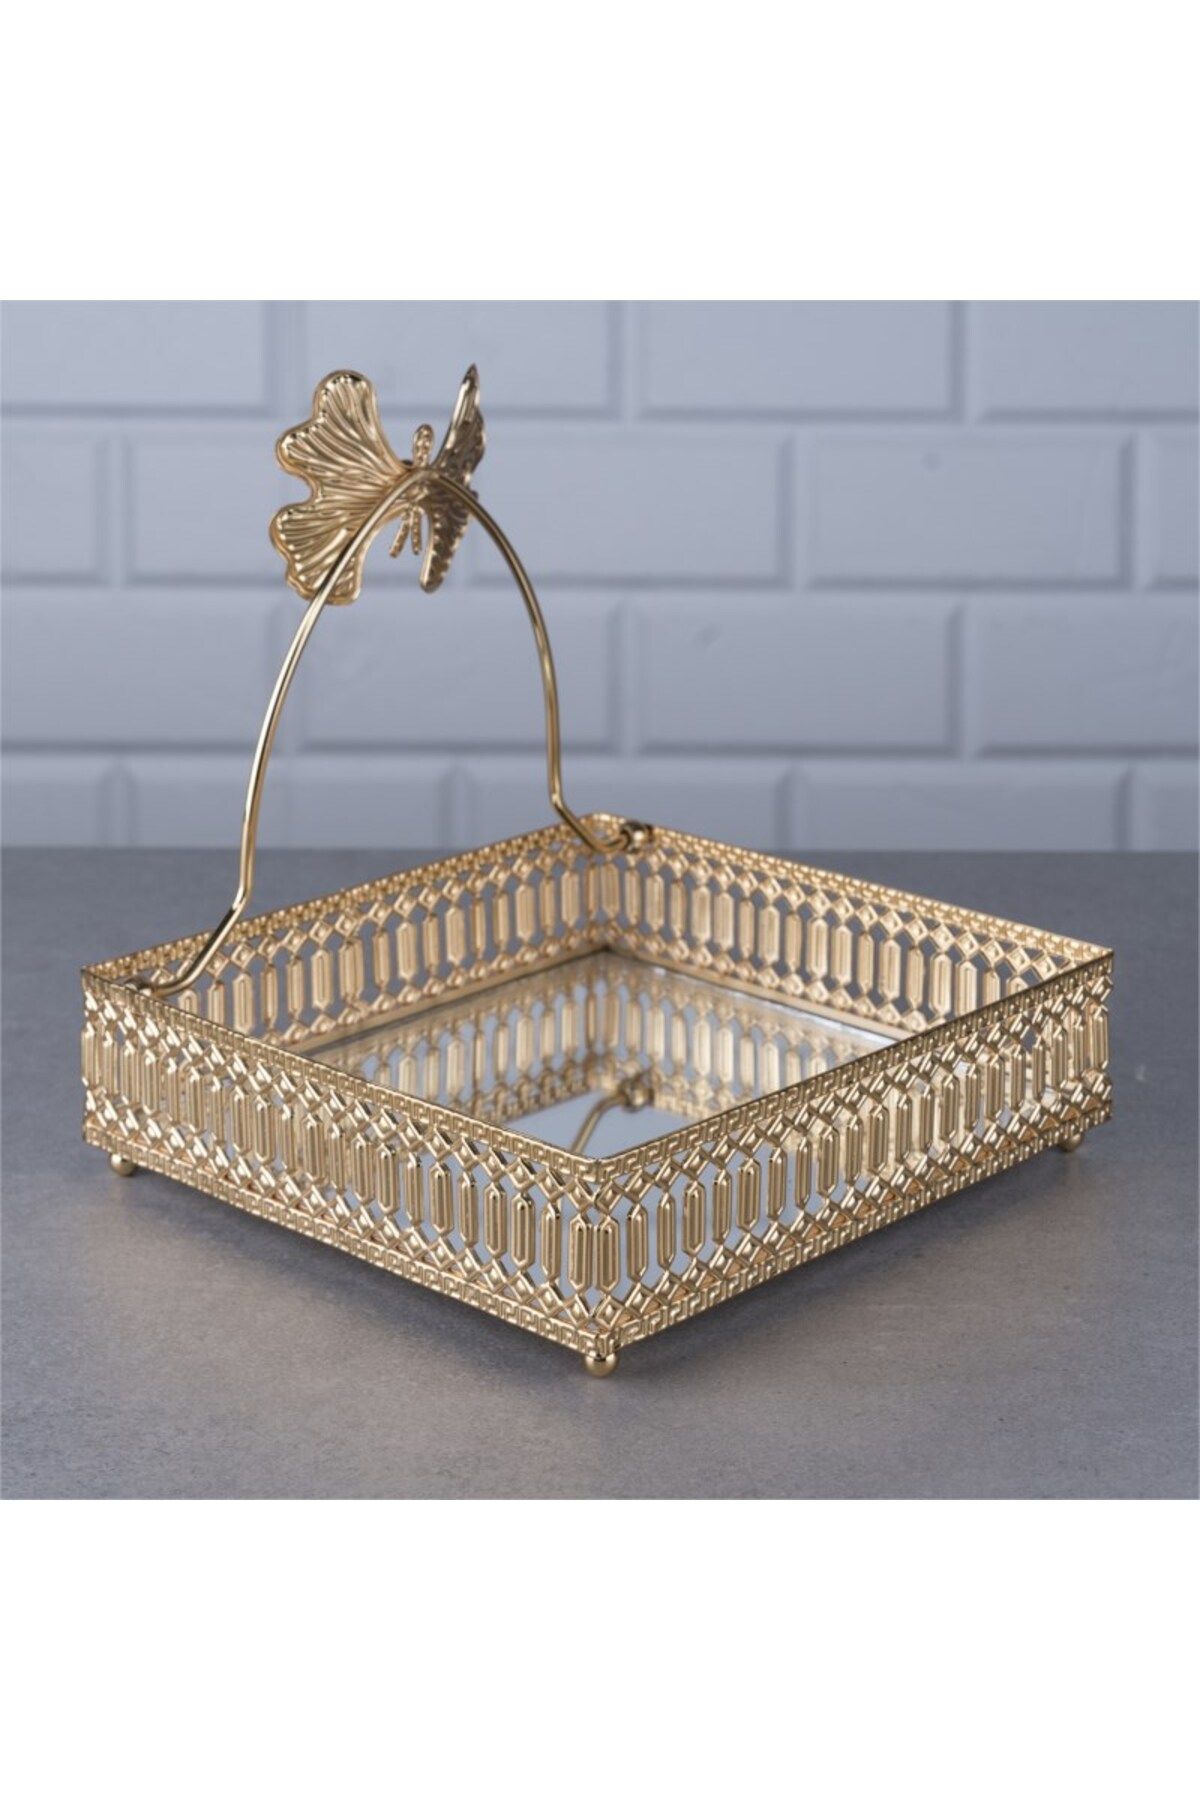 devigo Kelebek Model Aynalı Peçetelik Paslanmaz Çelik Lüks Peçete Kutusu Gold İşlemeli